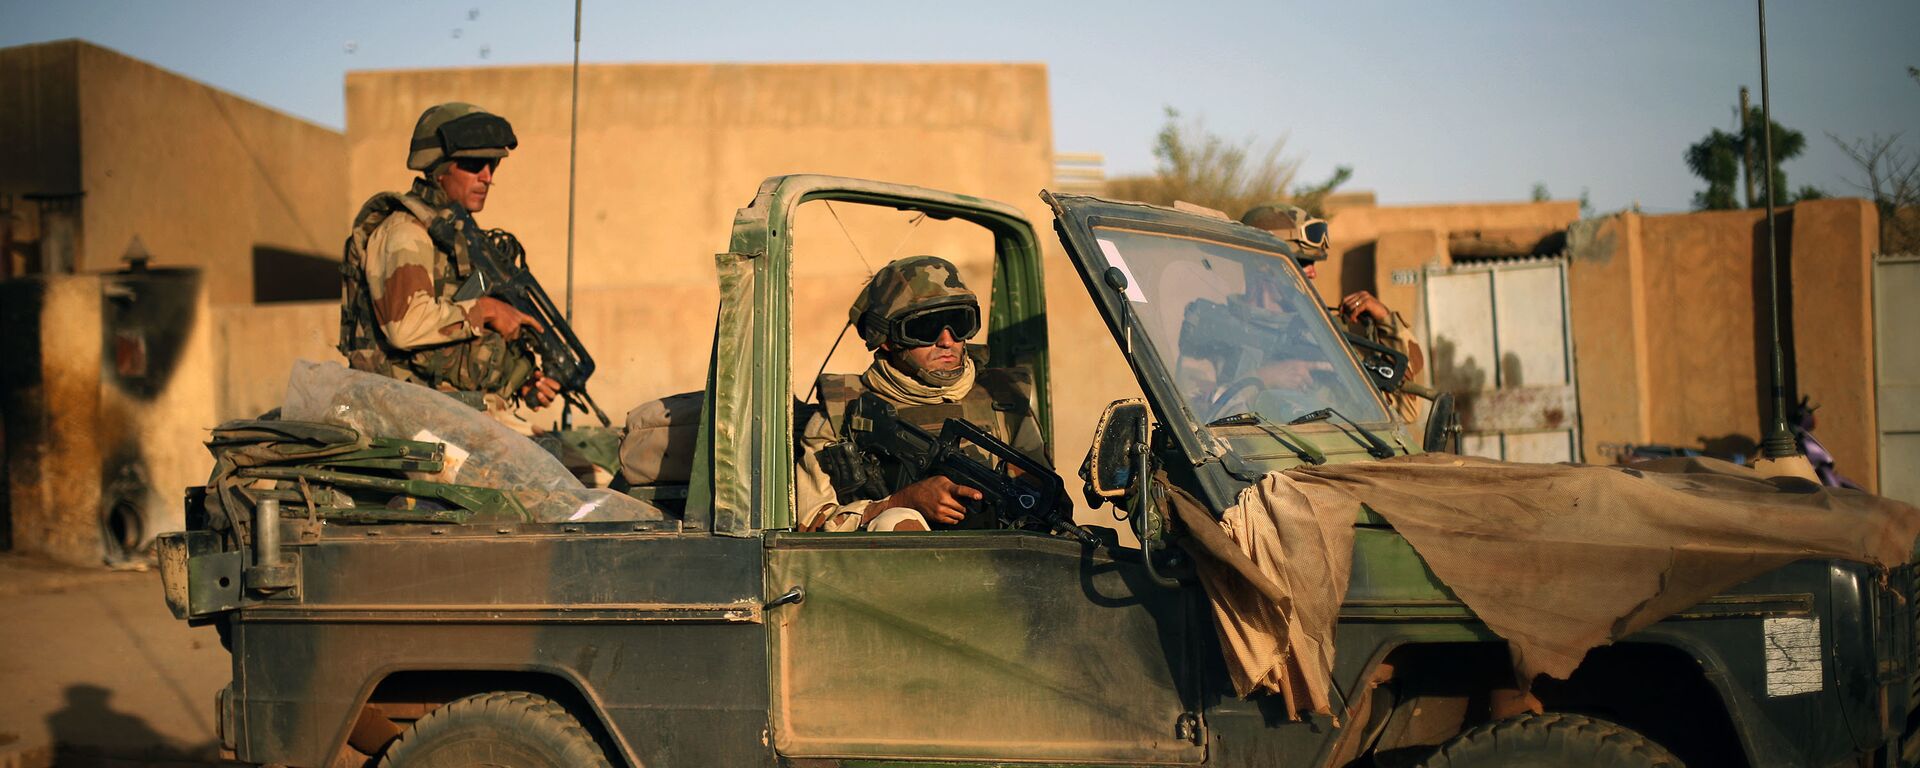 Foto de arquivo: soldados franceses garantem a evacuação de estrangeiros durante trocas de tiros com jihadistas em Gao, norte do Mali, 10 de fevereiro de 2013 - Sputnik Brasil, 1920, 04.05.2022